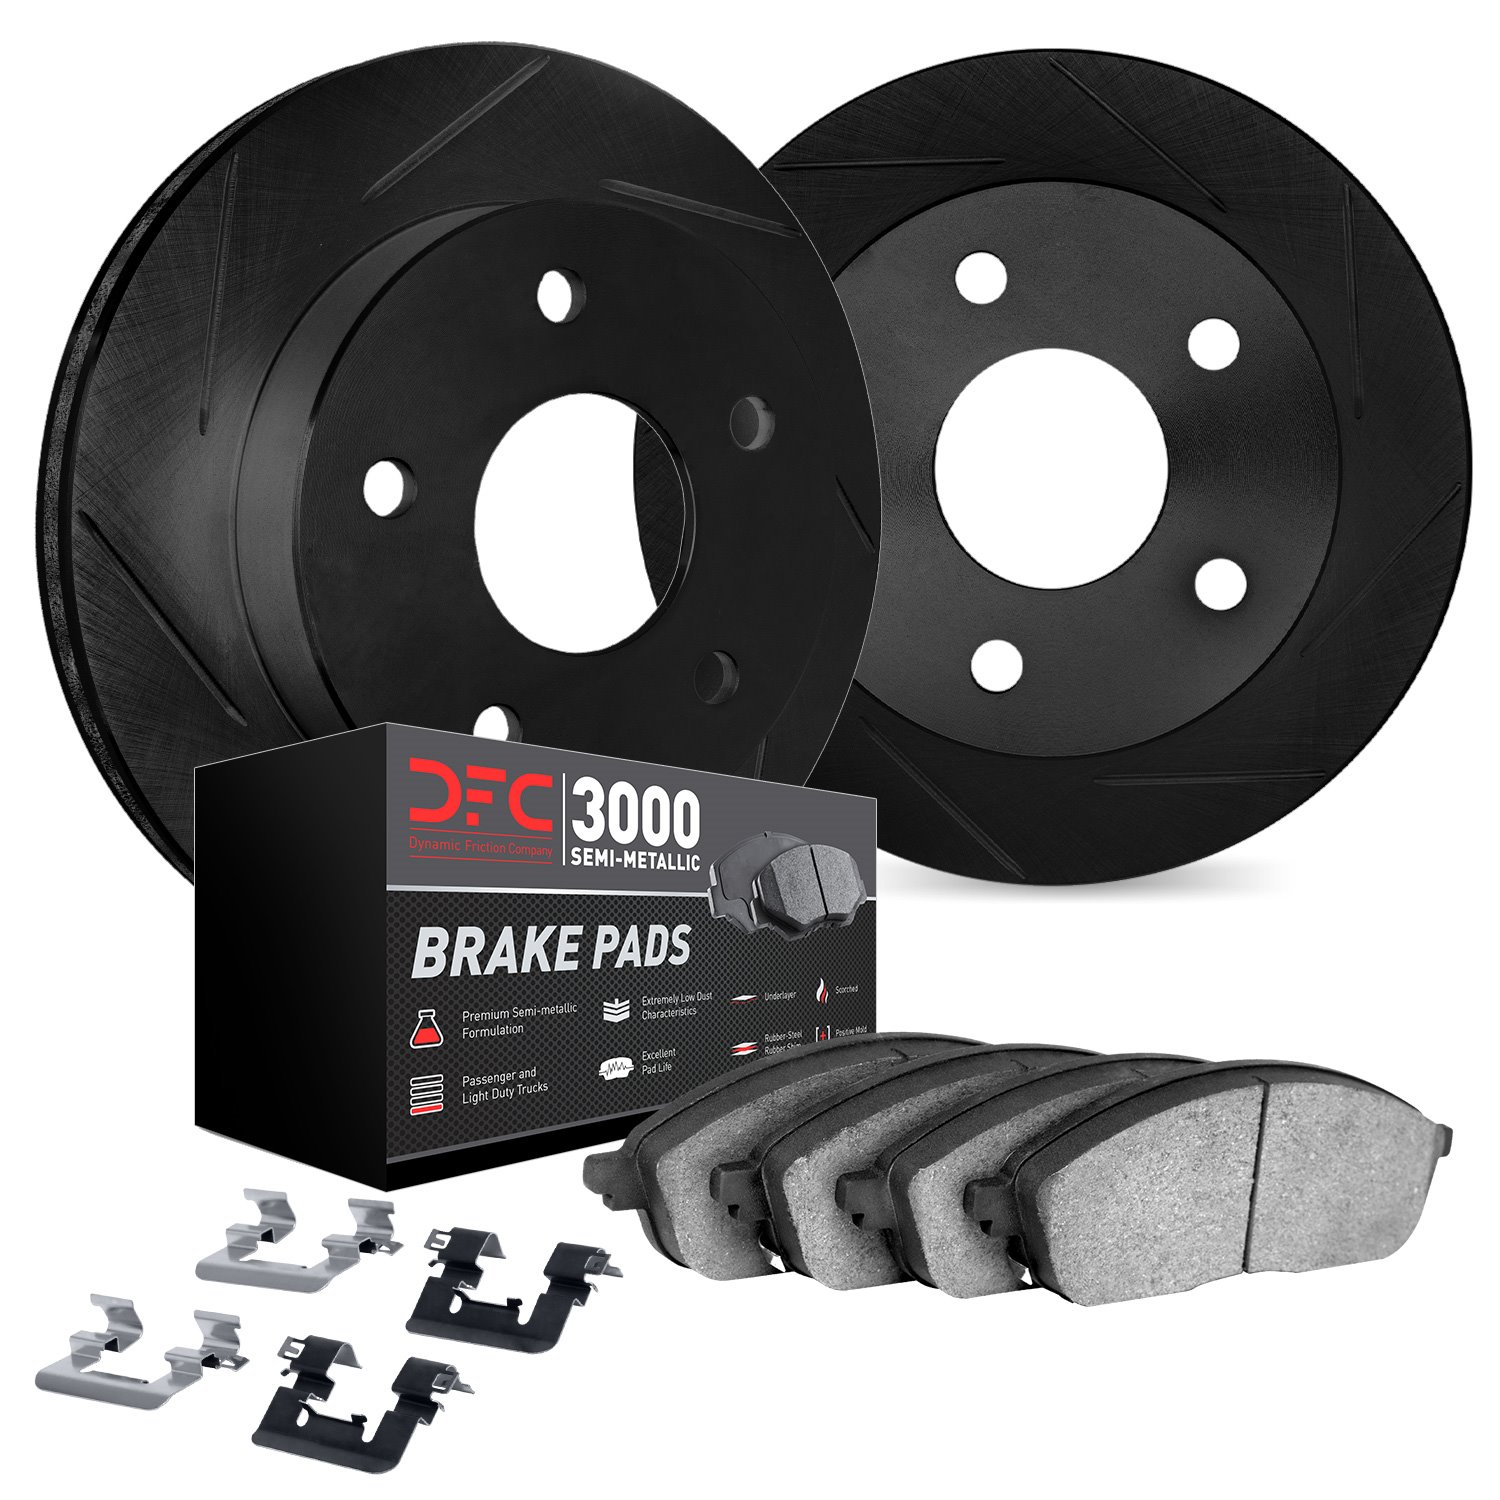 3112-68010 Slotted Brake Rotors with 3000-Series Semi-Metallic Brake Pads Kit & Hardware [Black], 2005-2014 Infiniti/Nissan, Pos